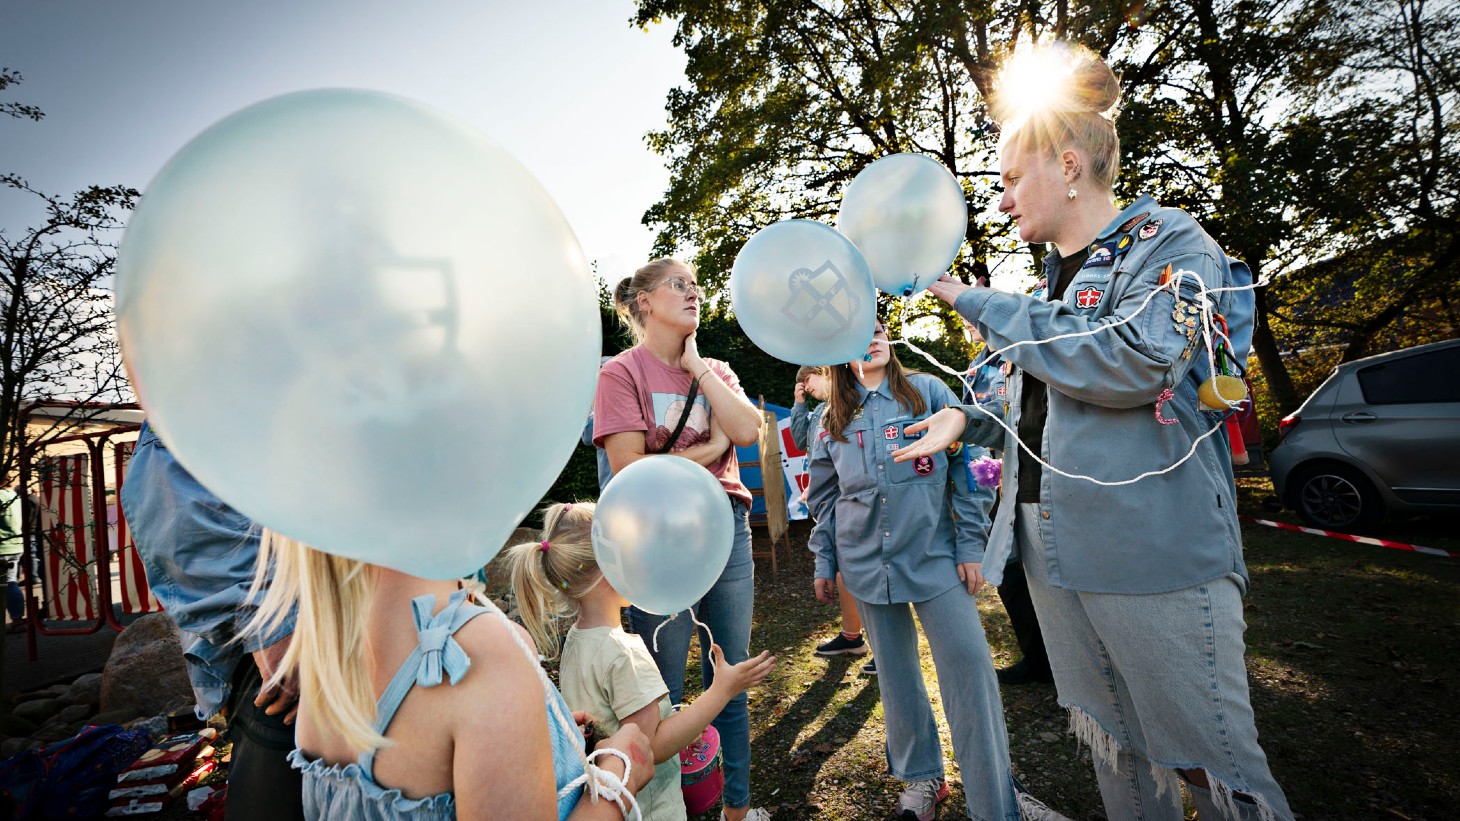 Billede af en gruppe spejdere med balloner i hænderne